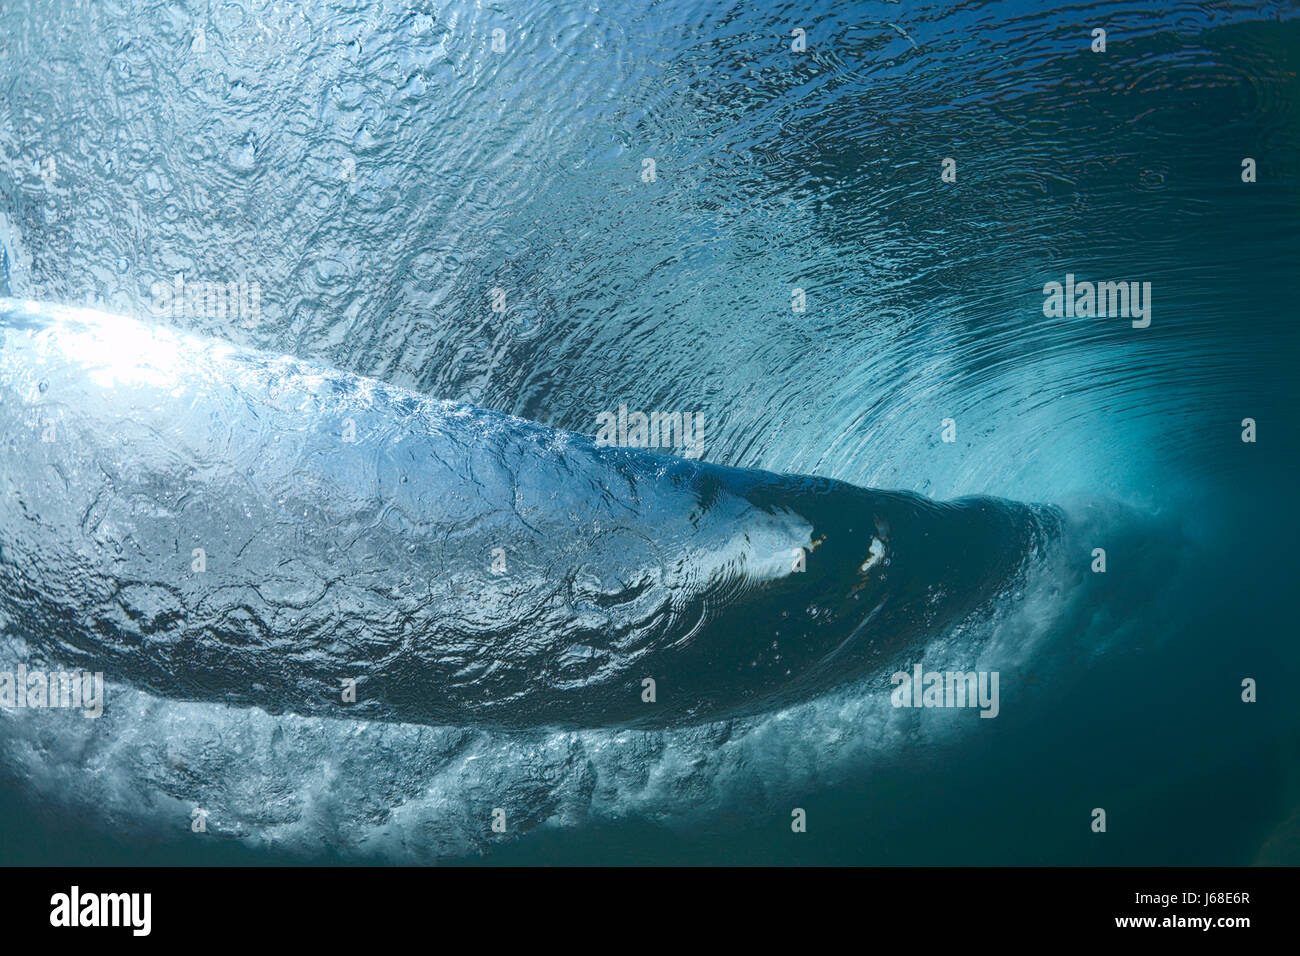 Sous-marine surf vague vagues mer océan eau eau salée fracture rupture Banque D'Images